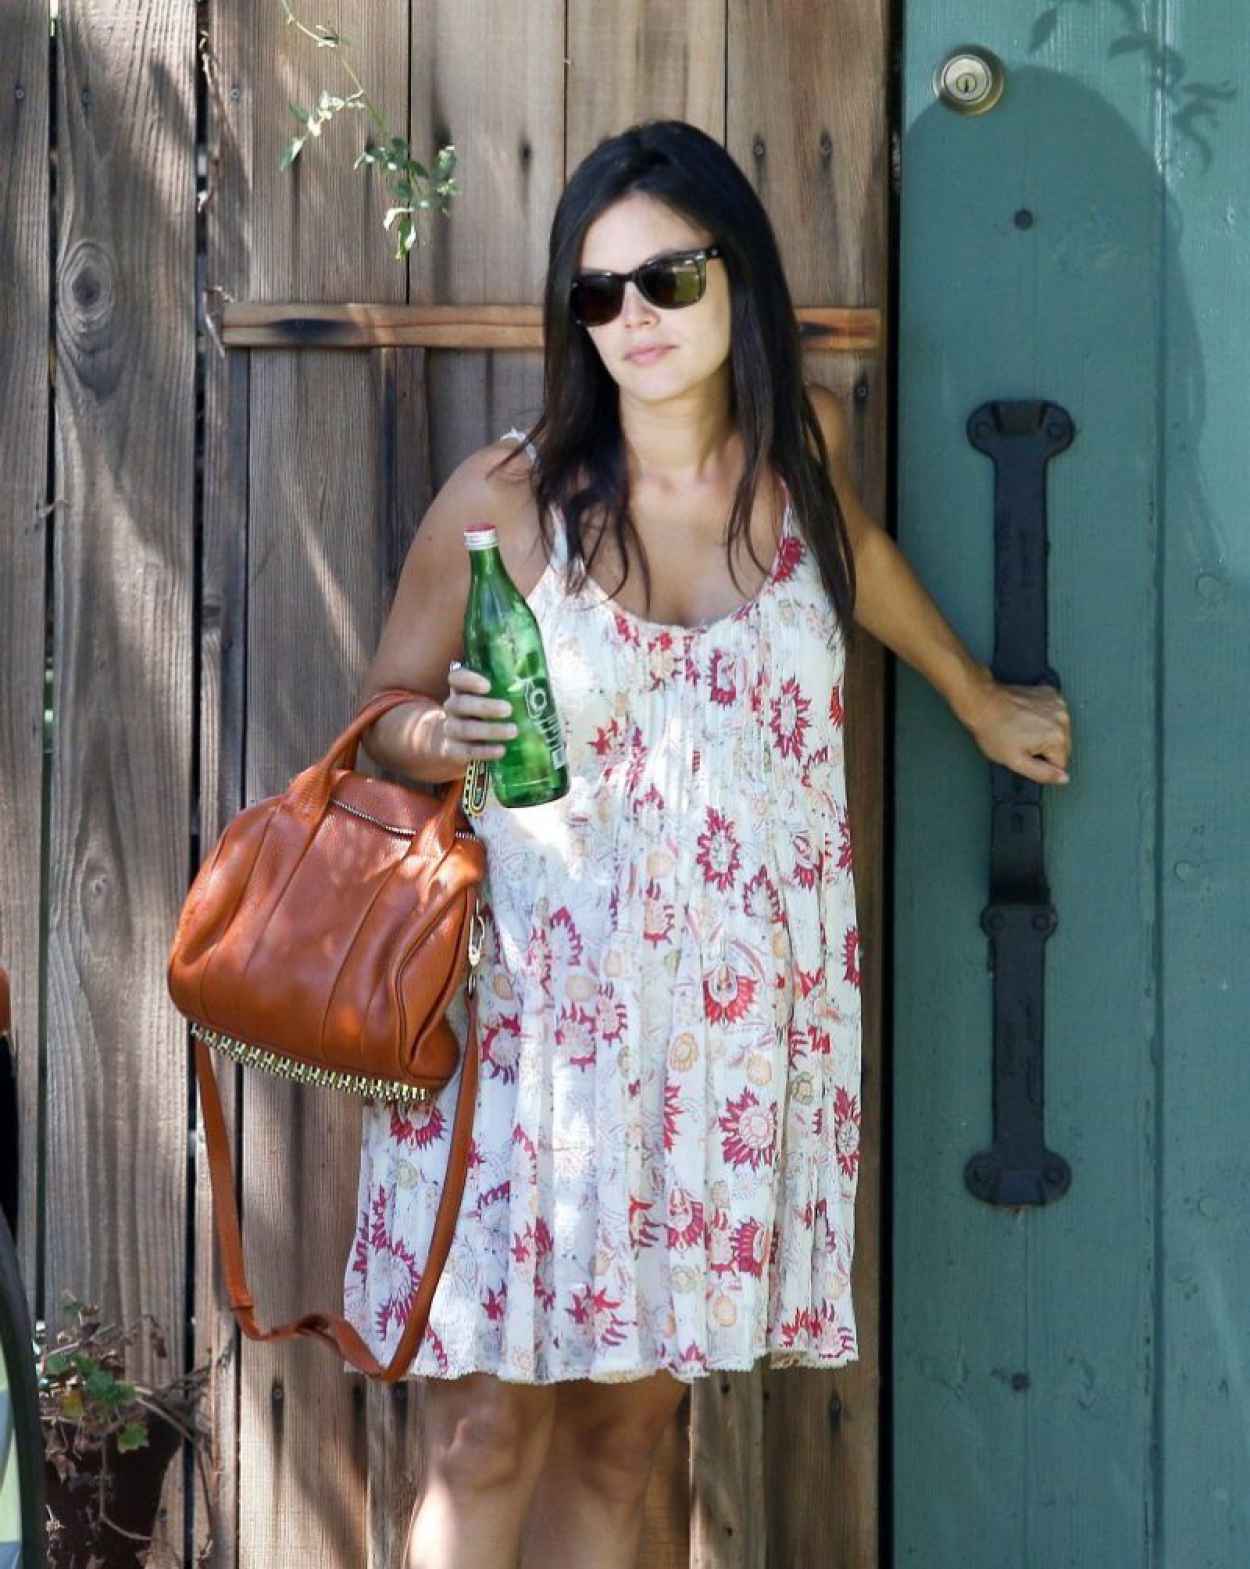 Rachel Bilson Wearing Summer Dress - Visiting a Friend in LA - August 2015-1